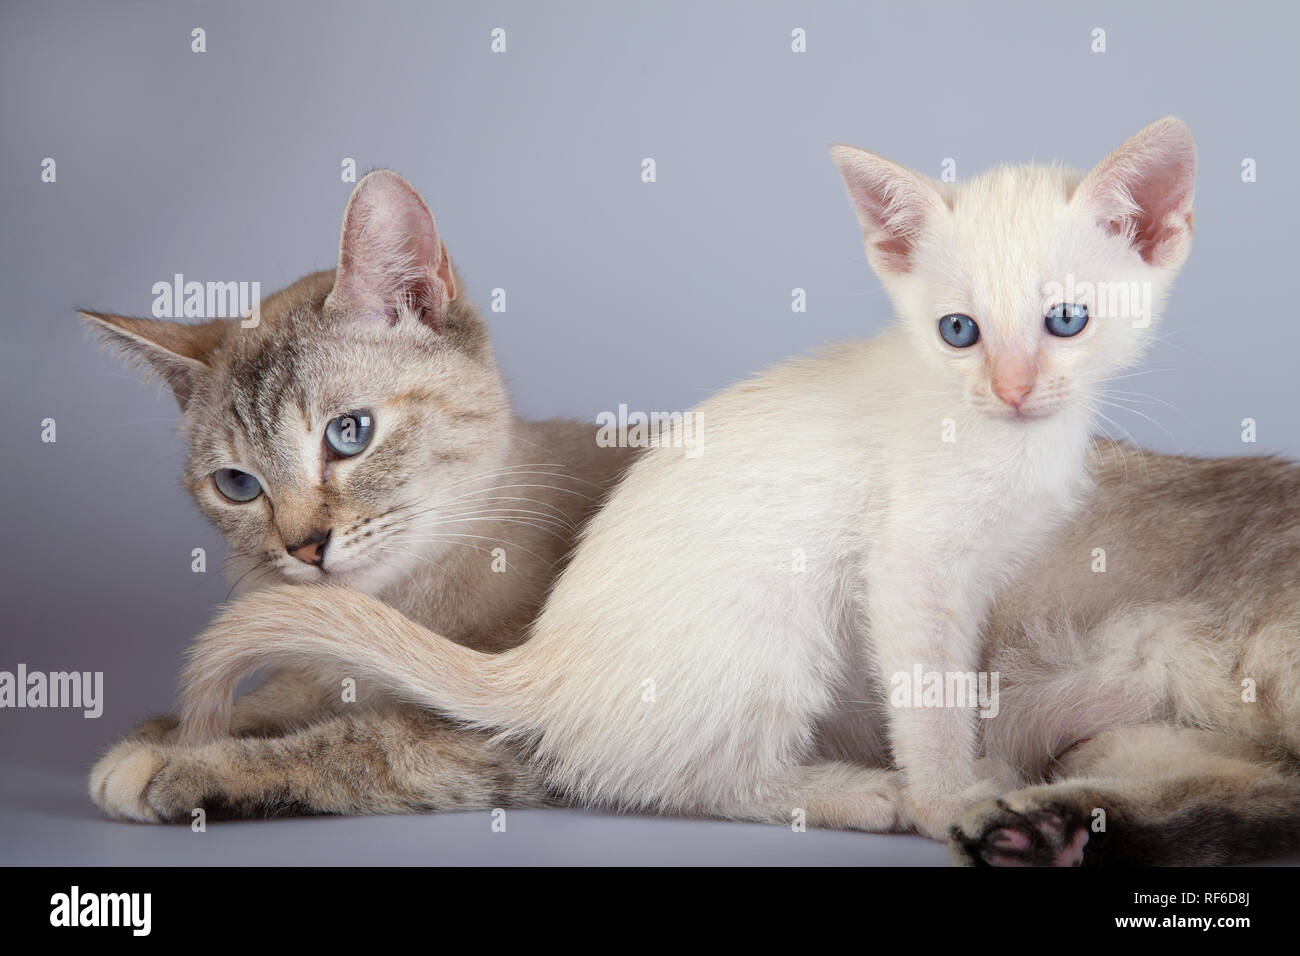 Un gatto siamese gatto su uno sfondo bianco, adulti siam tabby point con punto rosso kitty Foto Stock